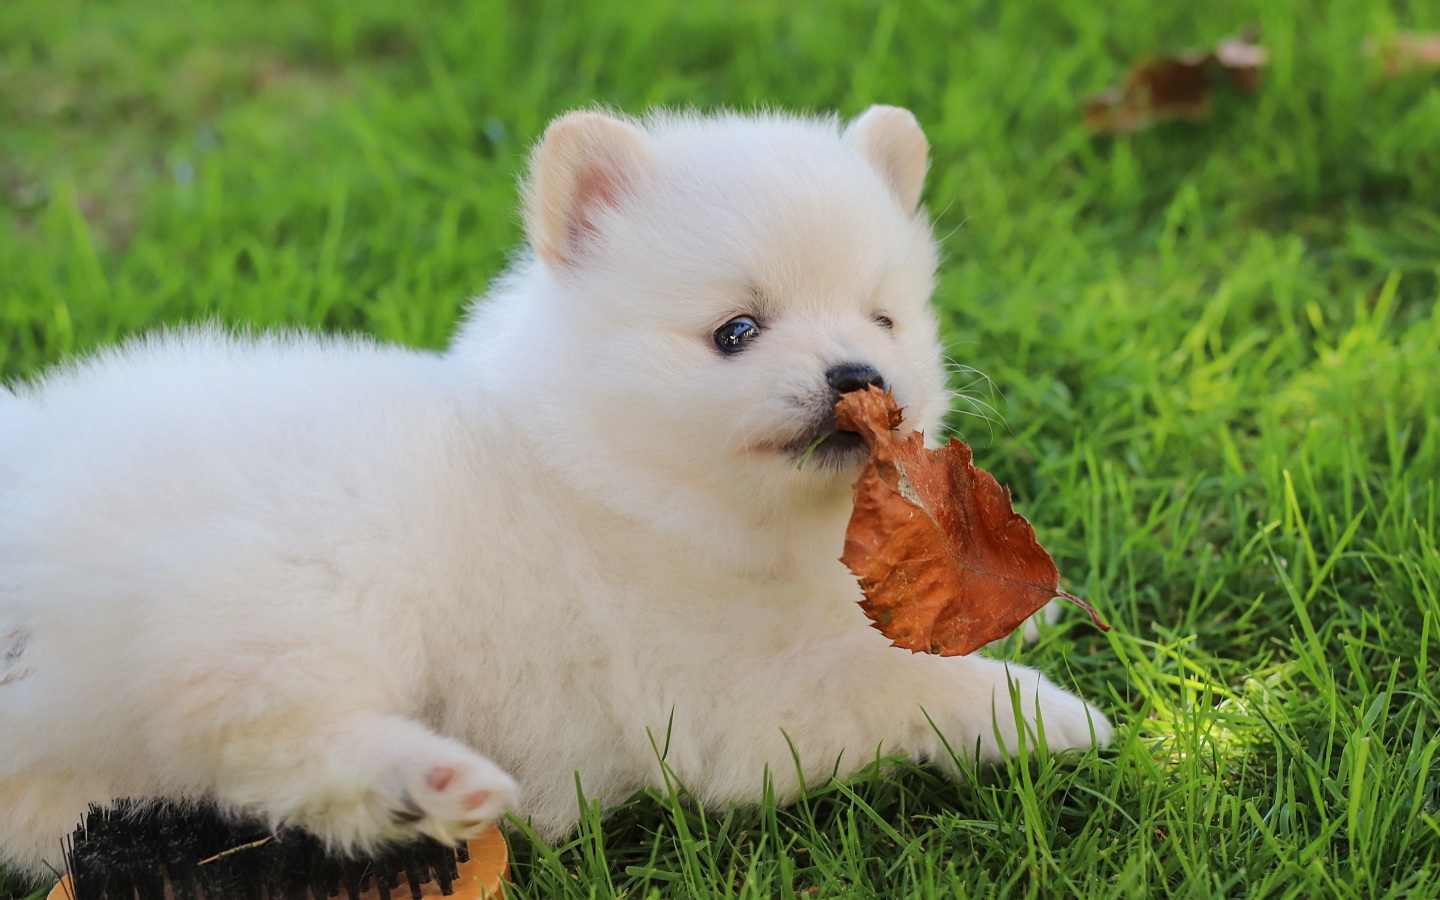 Маленький белый щенок шпица на зеленой траве с листом